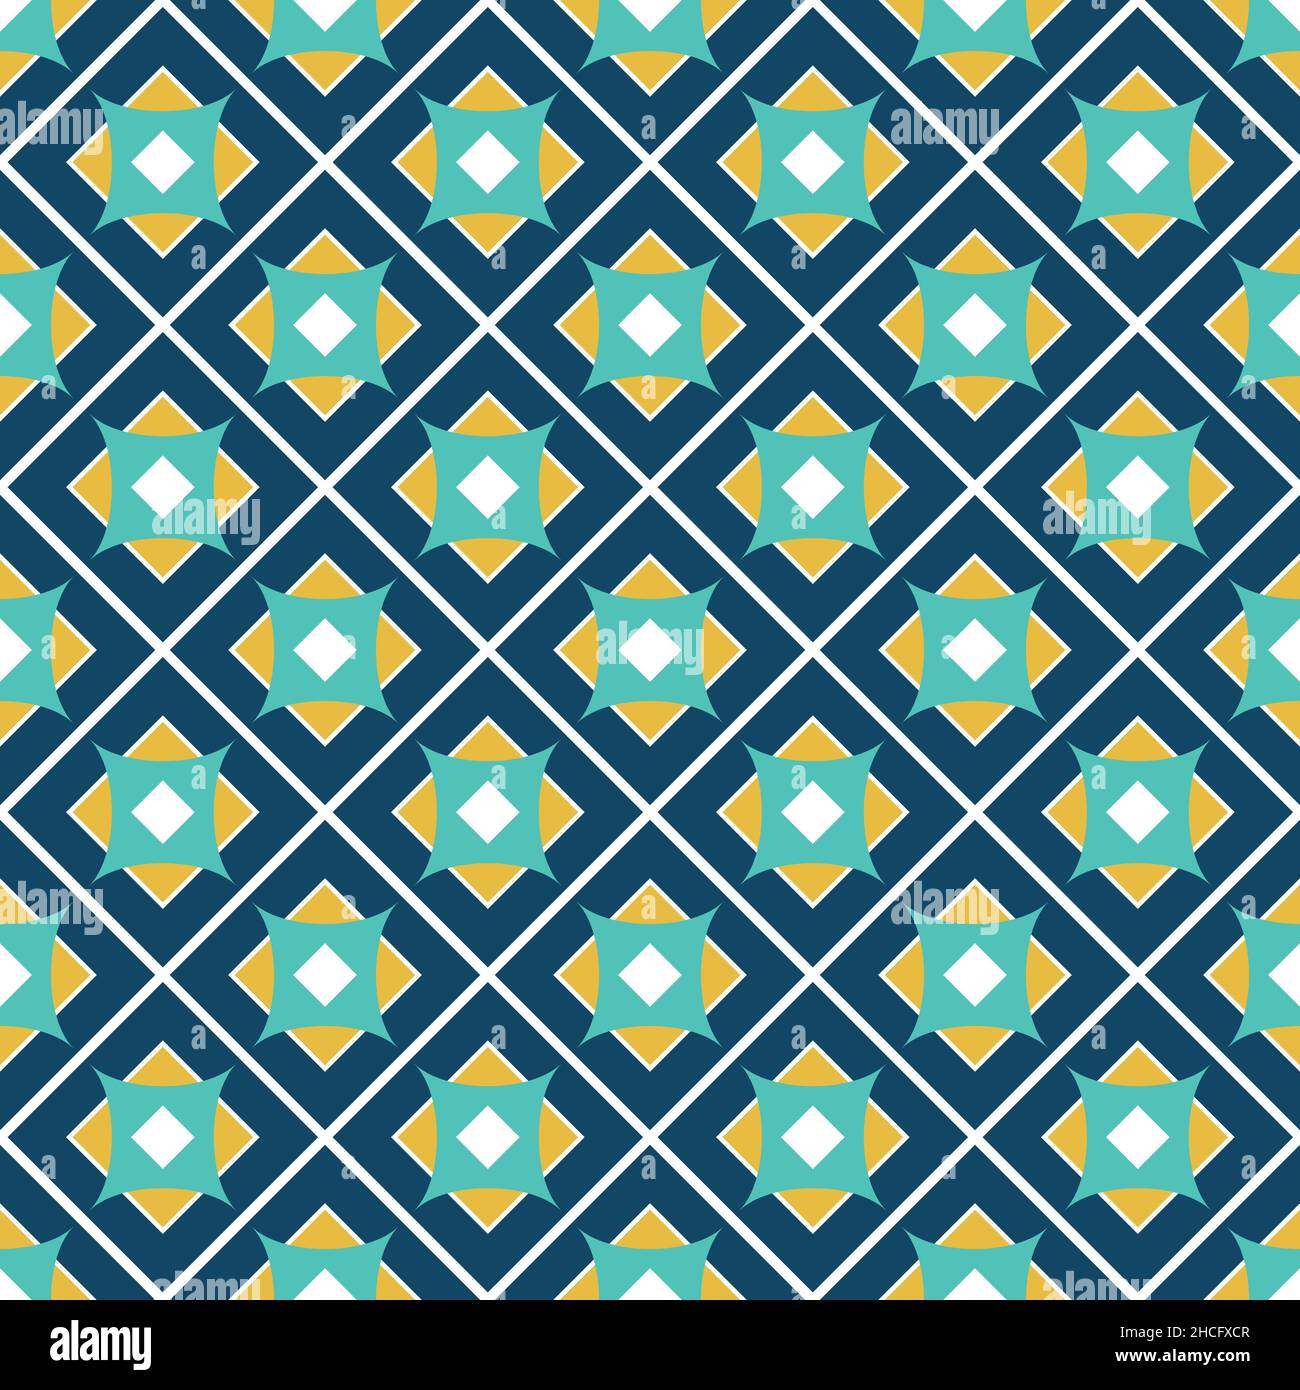 Mosaikfliesen mit verschiedenen Quadraten. Patchwork-Stil. Vektorgrafik. Stock Vektor